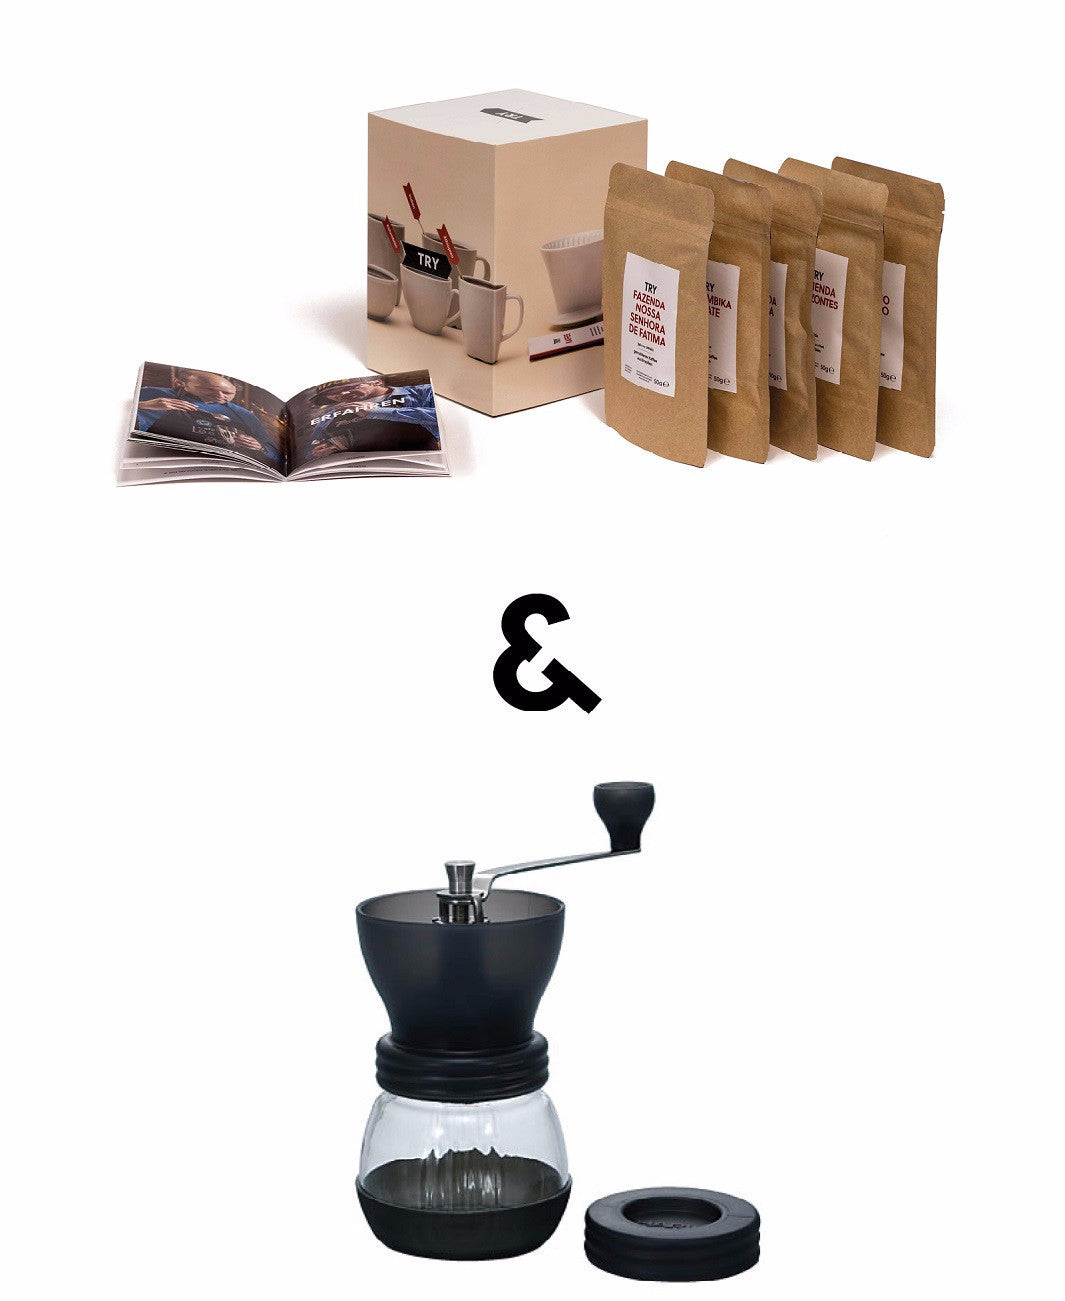 TRY Kaffee & Kaffeemühle - tryfoods